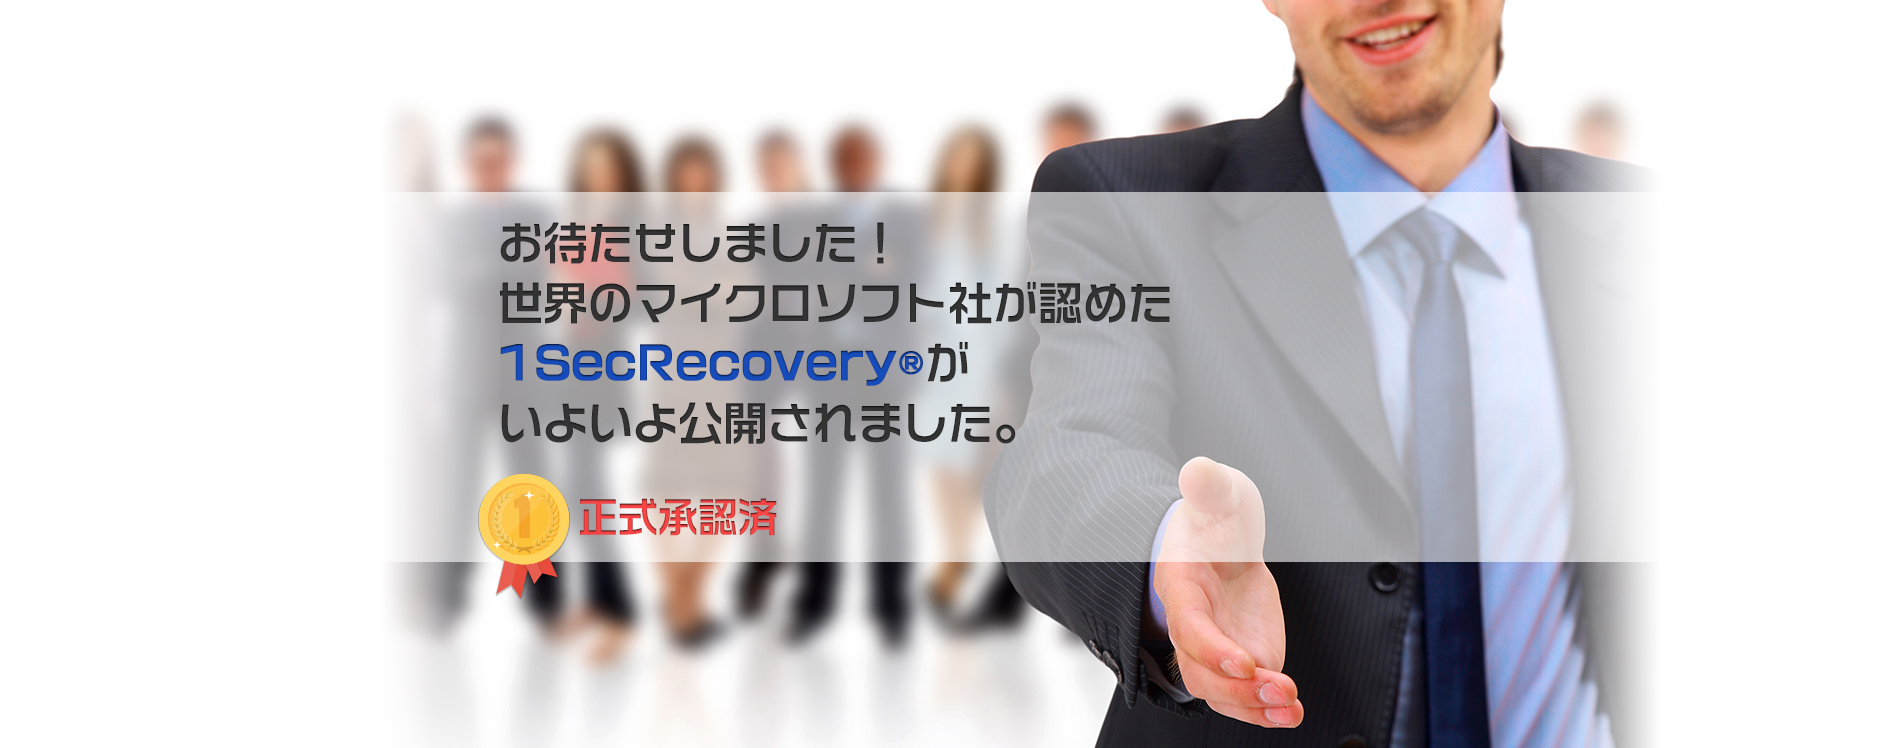 世界のマイクロソフト社が認めたリカバリーソフト1SecRecovery®が公開されました。